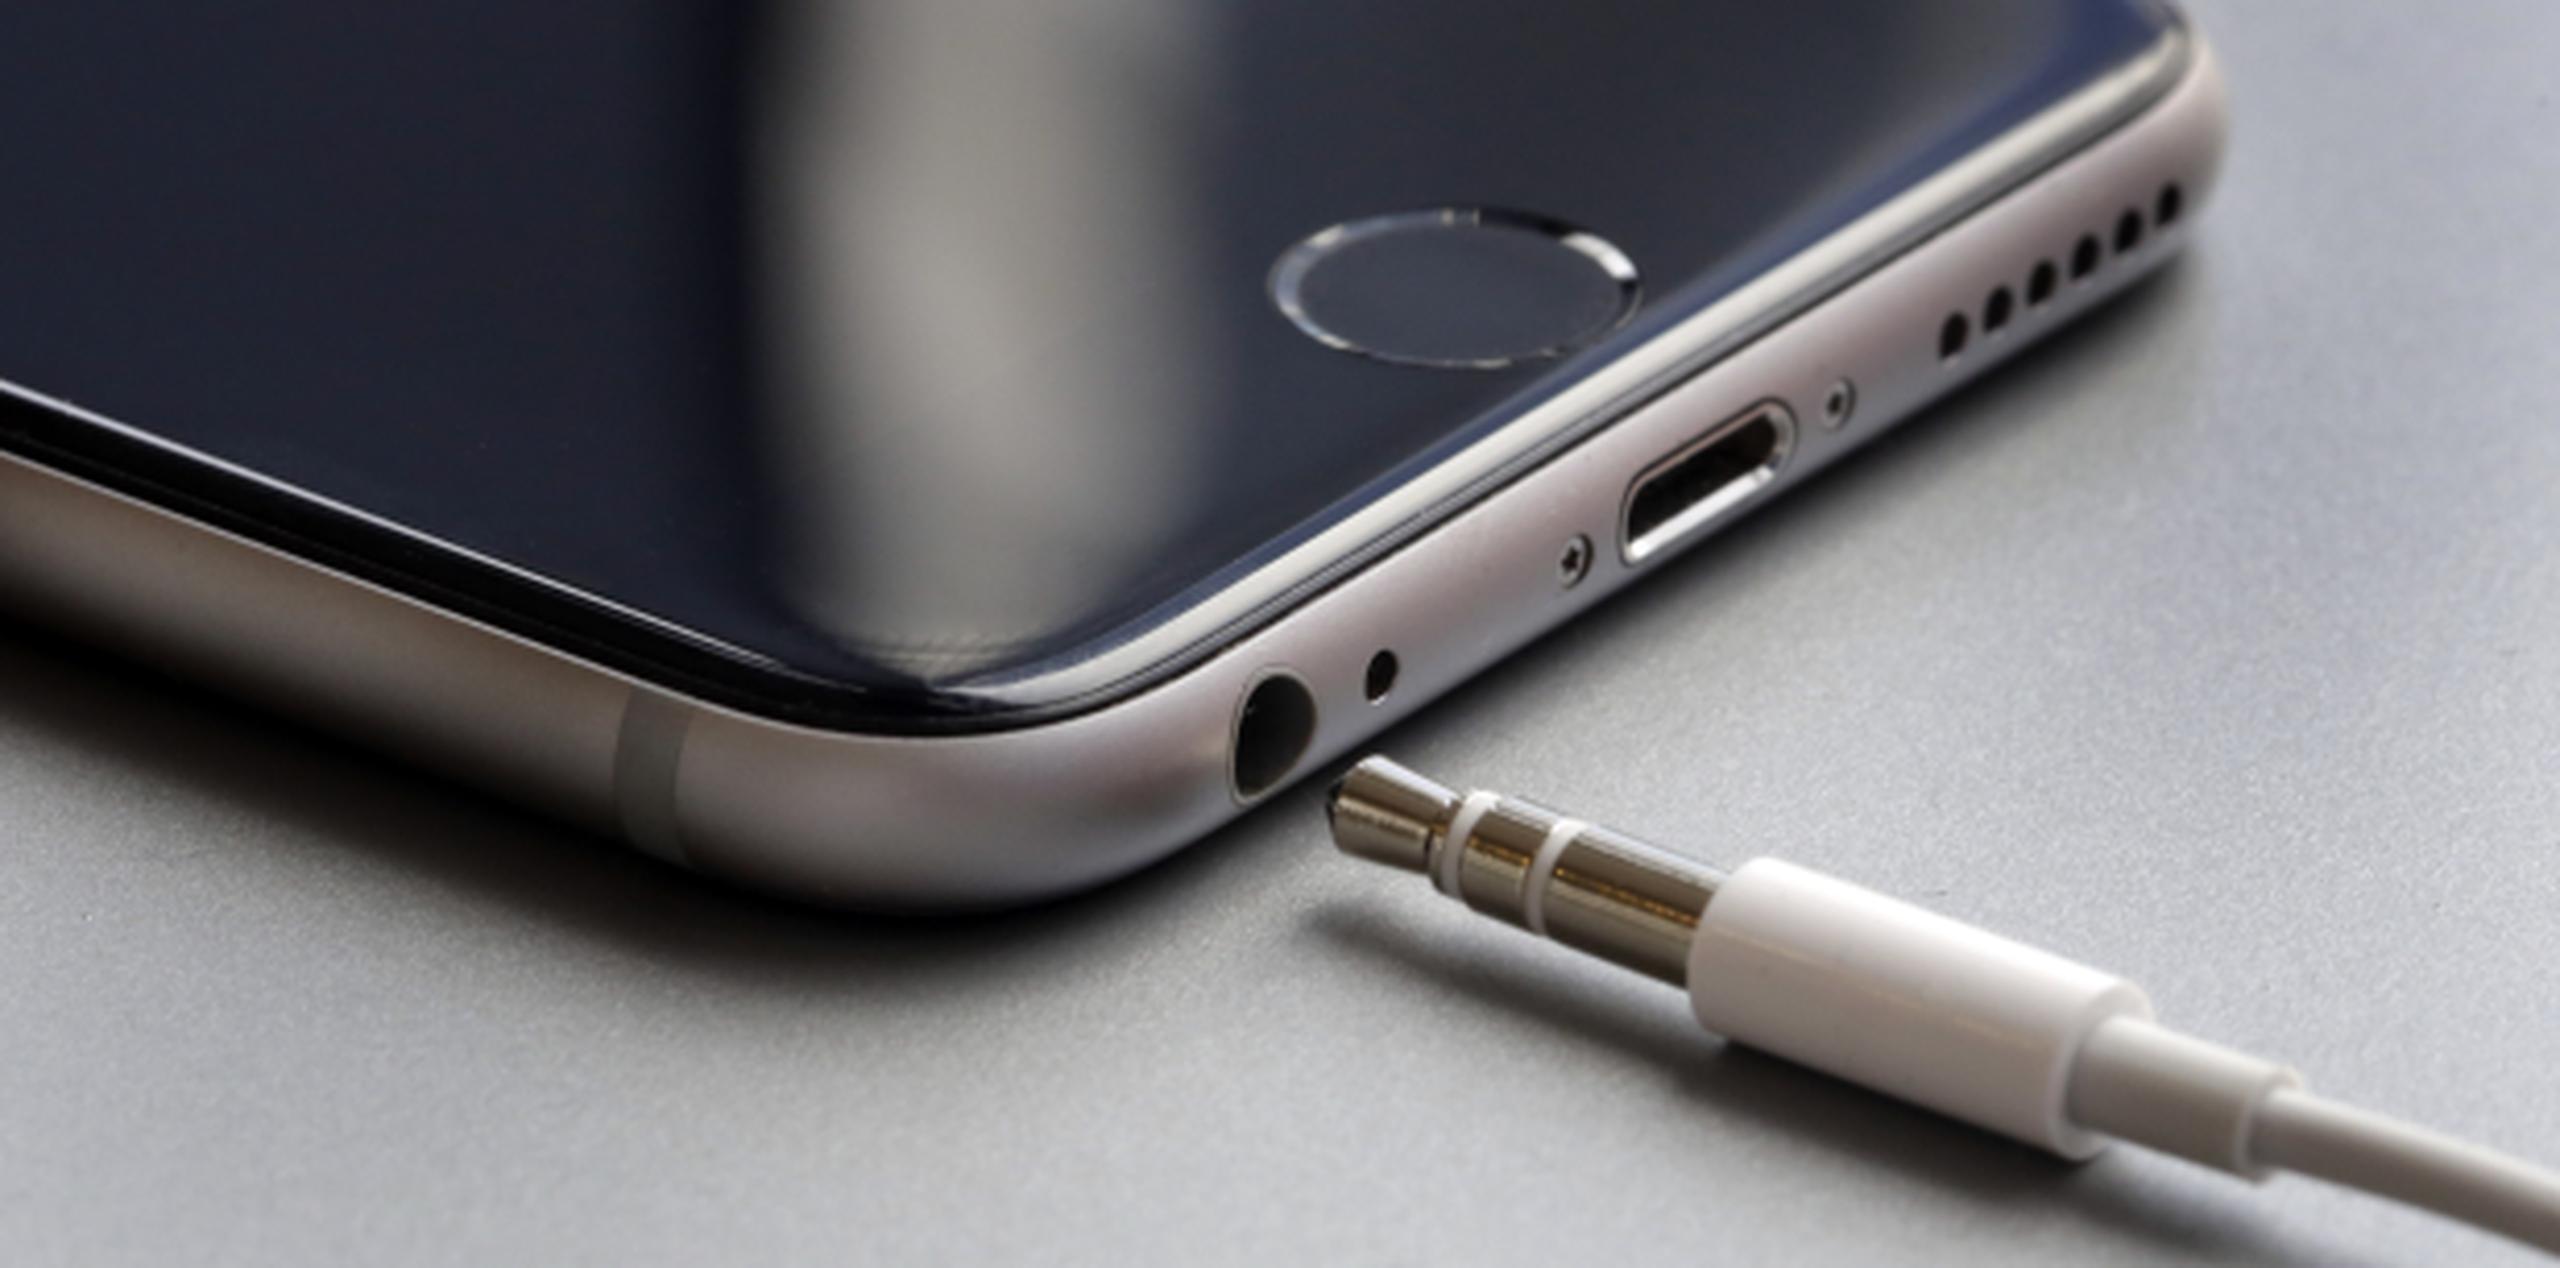 Apple no incluirá auriculares con los iPhone 12, según Ming-Chi Kuo